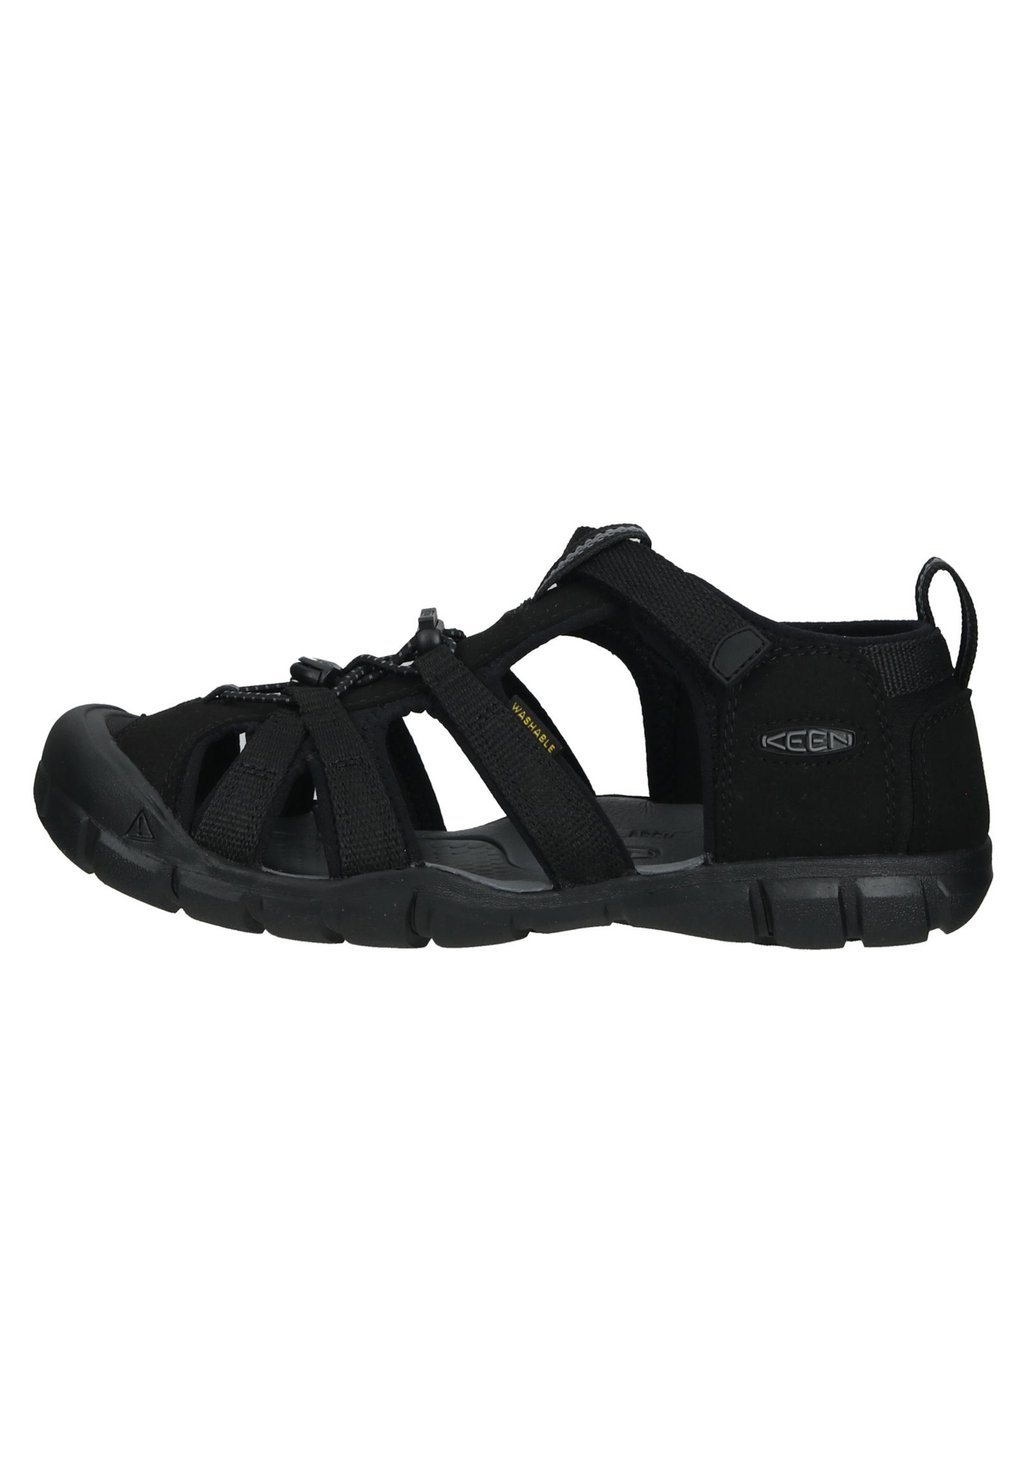 Трекинговые сандалии SEACAMP II CNX UNISEX Keen, цвет grey/black трекинговые сандалии odono salamander цвет black grey